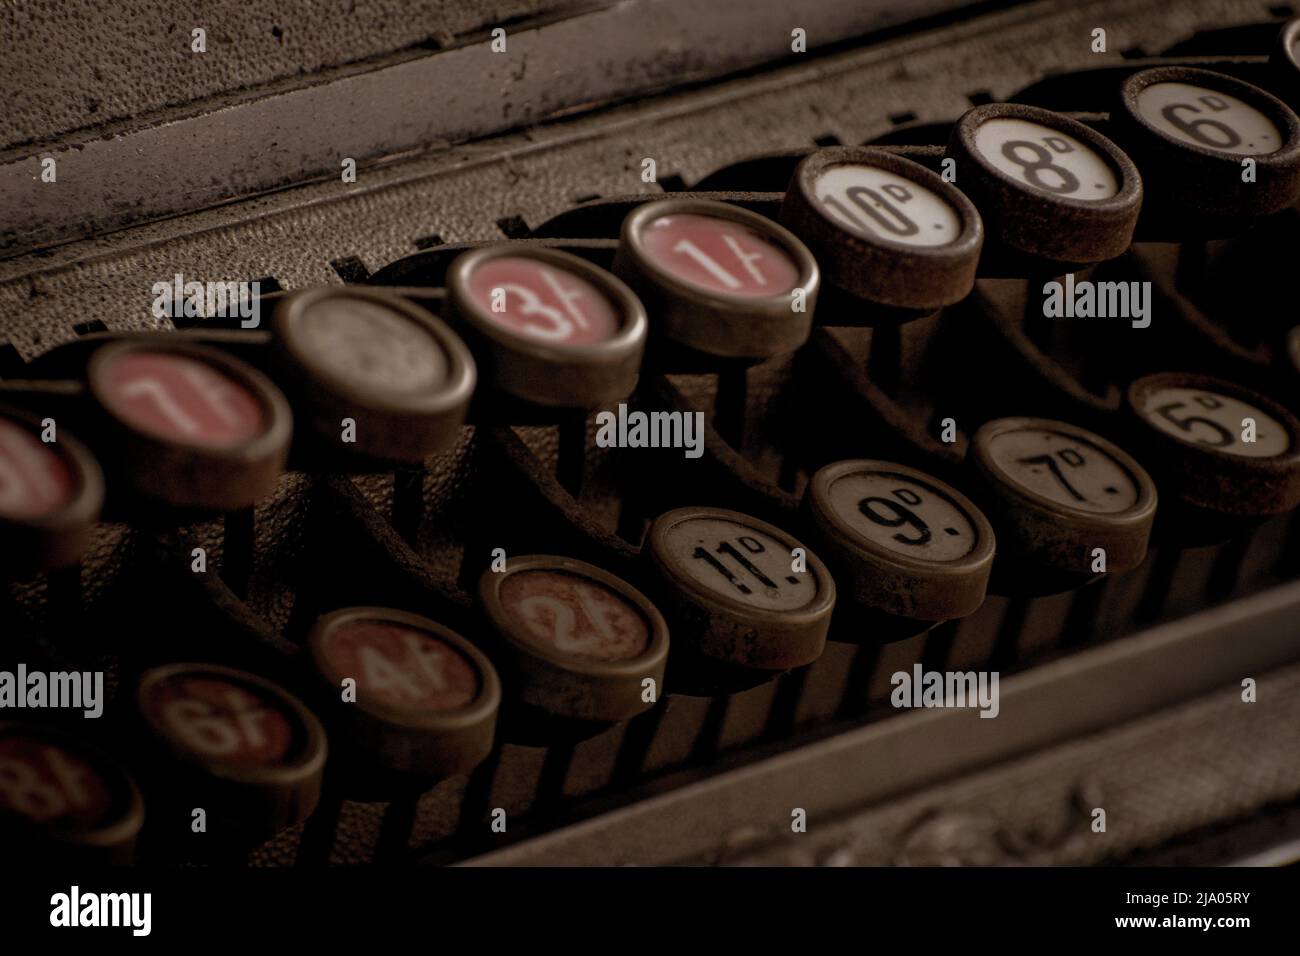 Keys on an old stile cash register Stock Photo